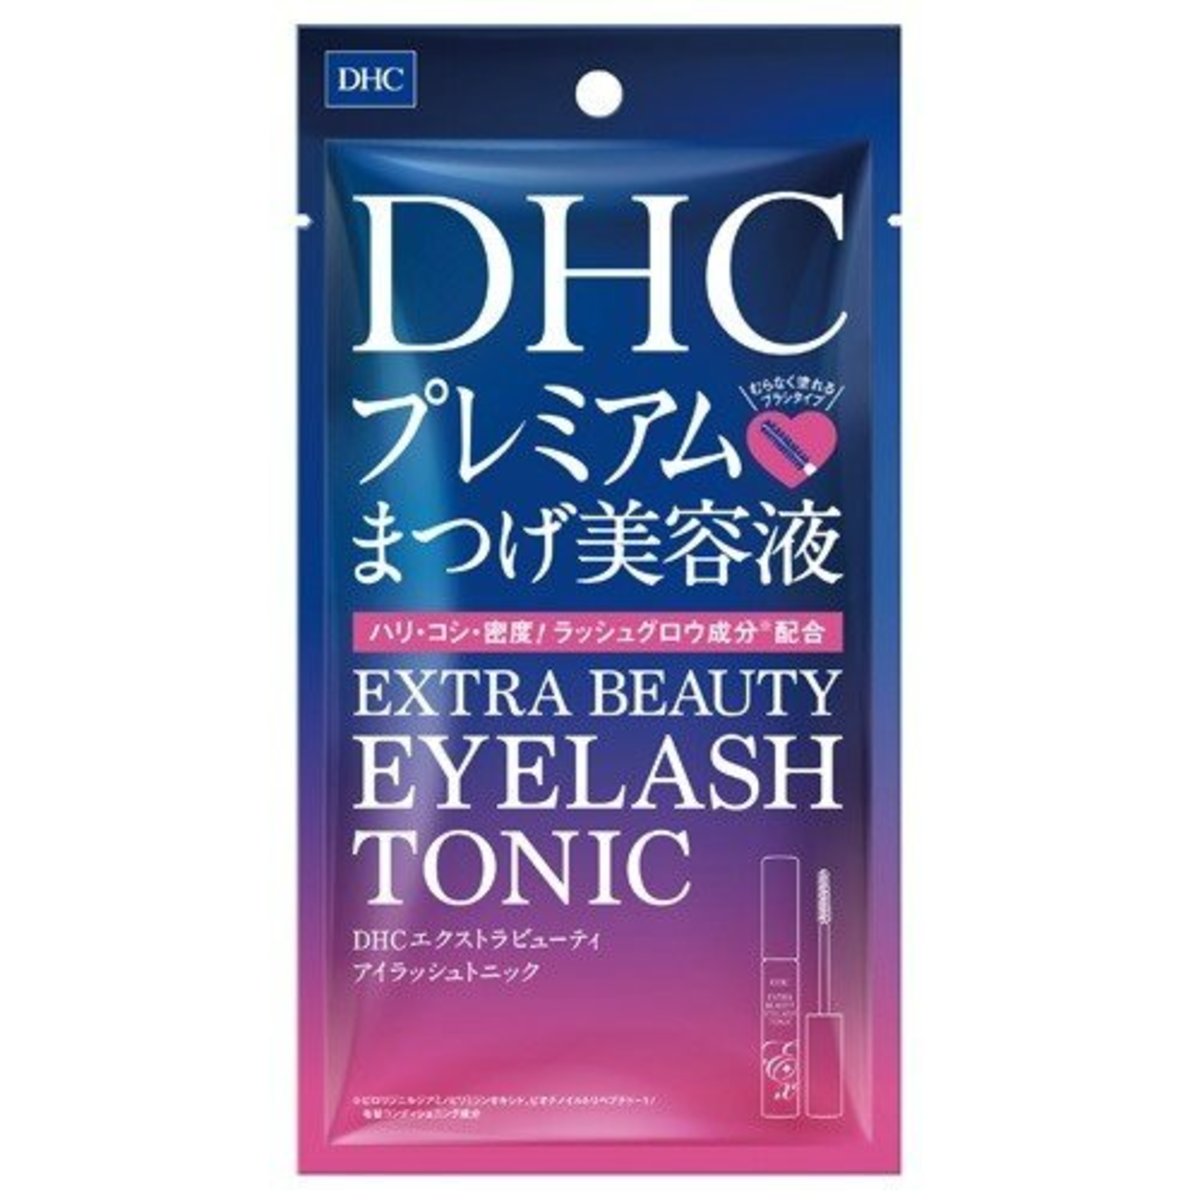 Premium 睫毛增長修護美容液 6.5ml (藍紫包裝)(平行進口)